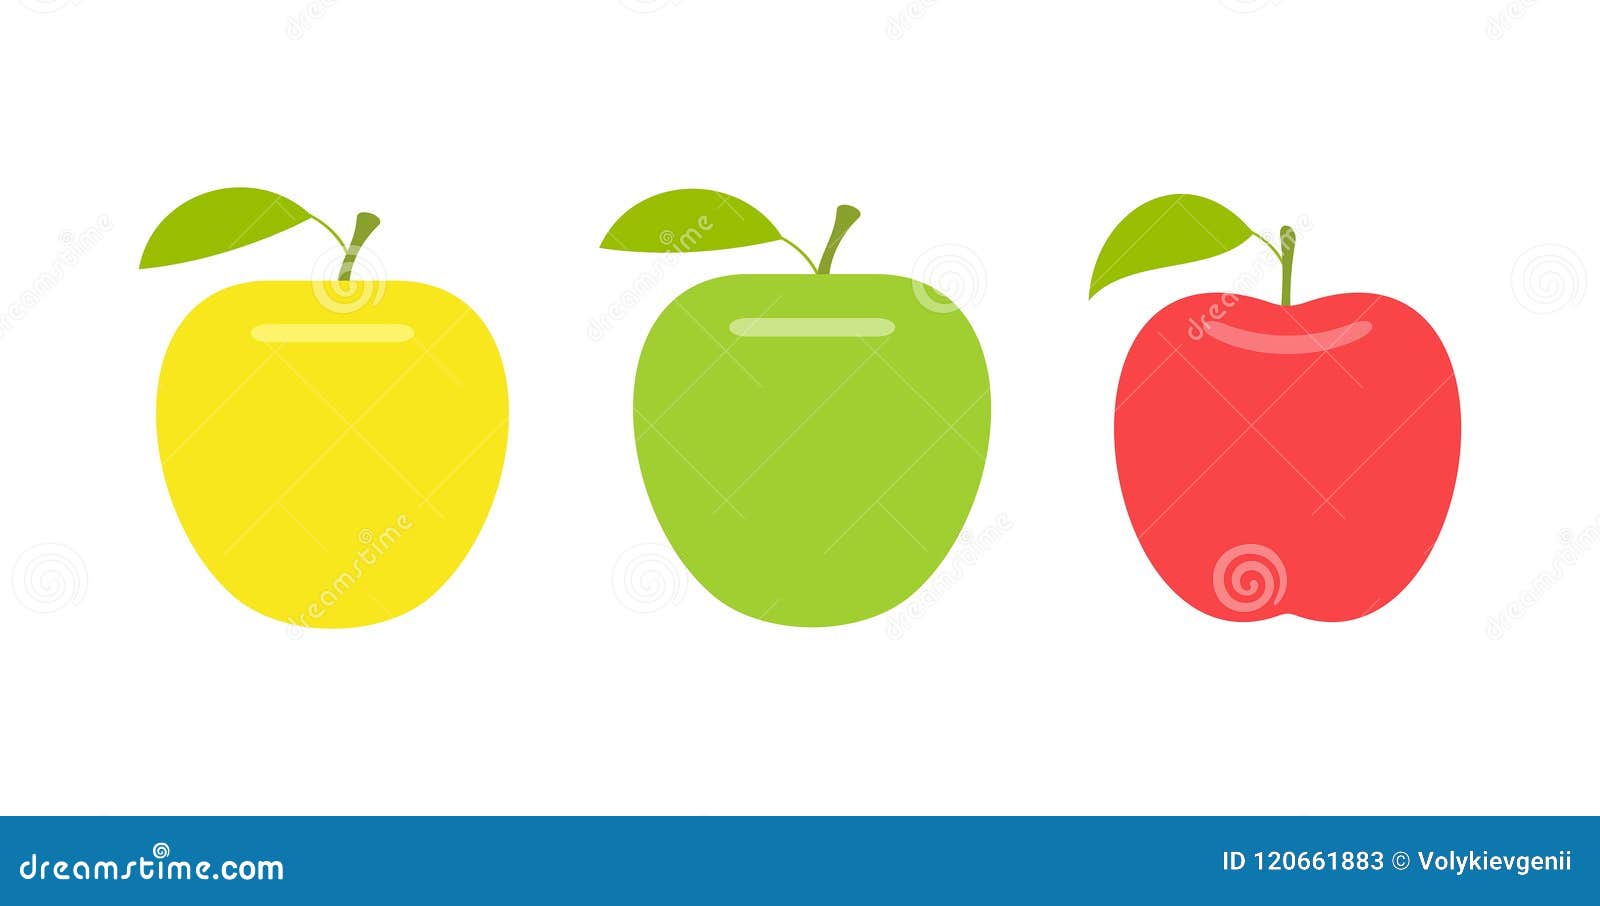 Раздаточный материал яблоки зеленые, красные, желтые